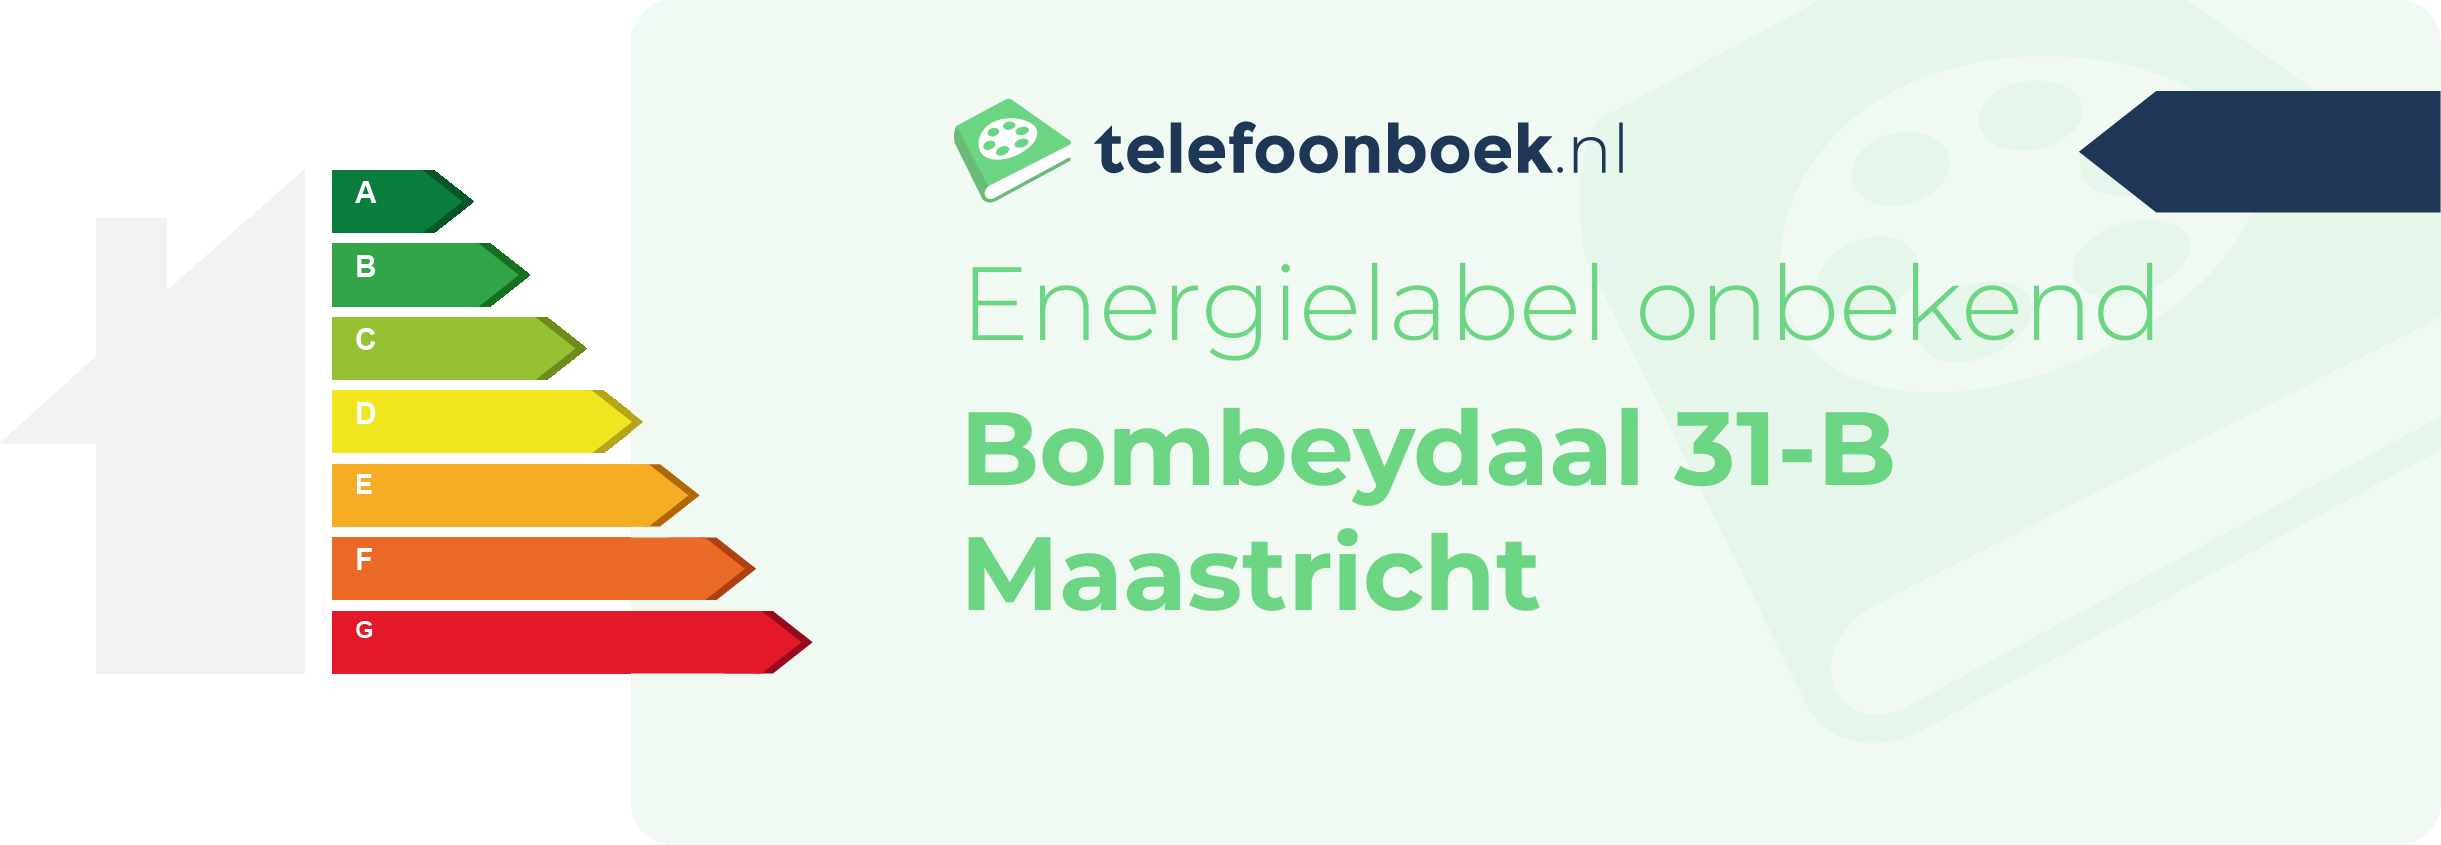 Energielabel Bombeydaal 31-B Maastricht